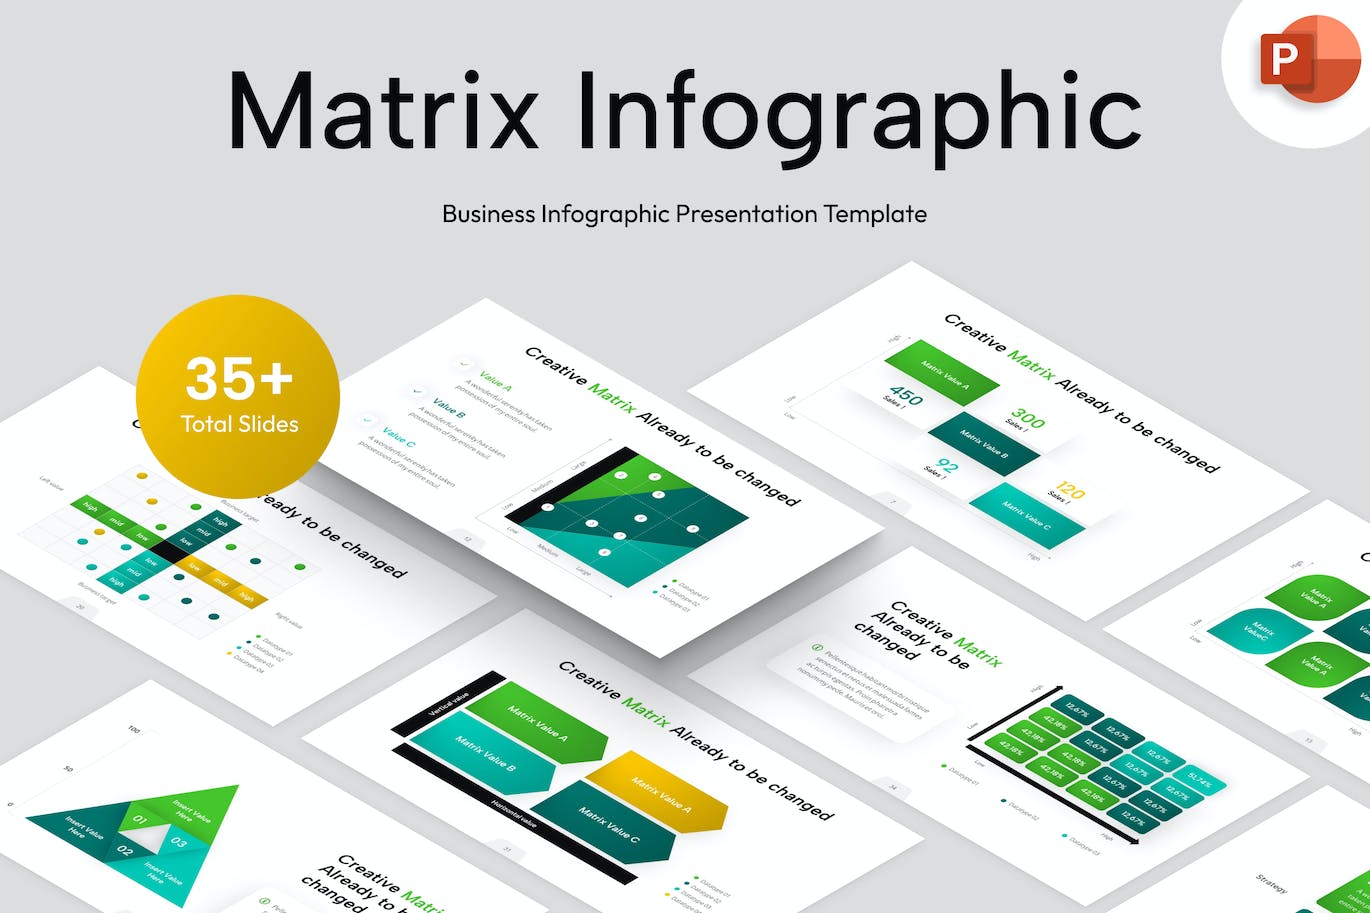 矩阵信息图表PowerPoint演示文稿模板 Matrix Infographic PowerPoint Template 幻灯图表 第1张